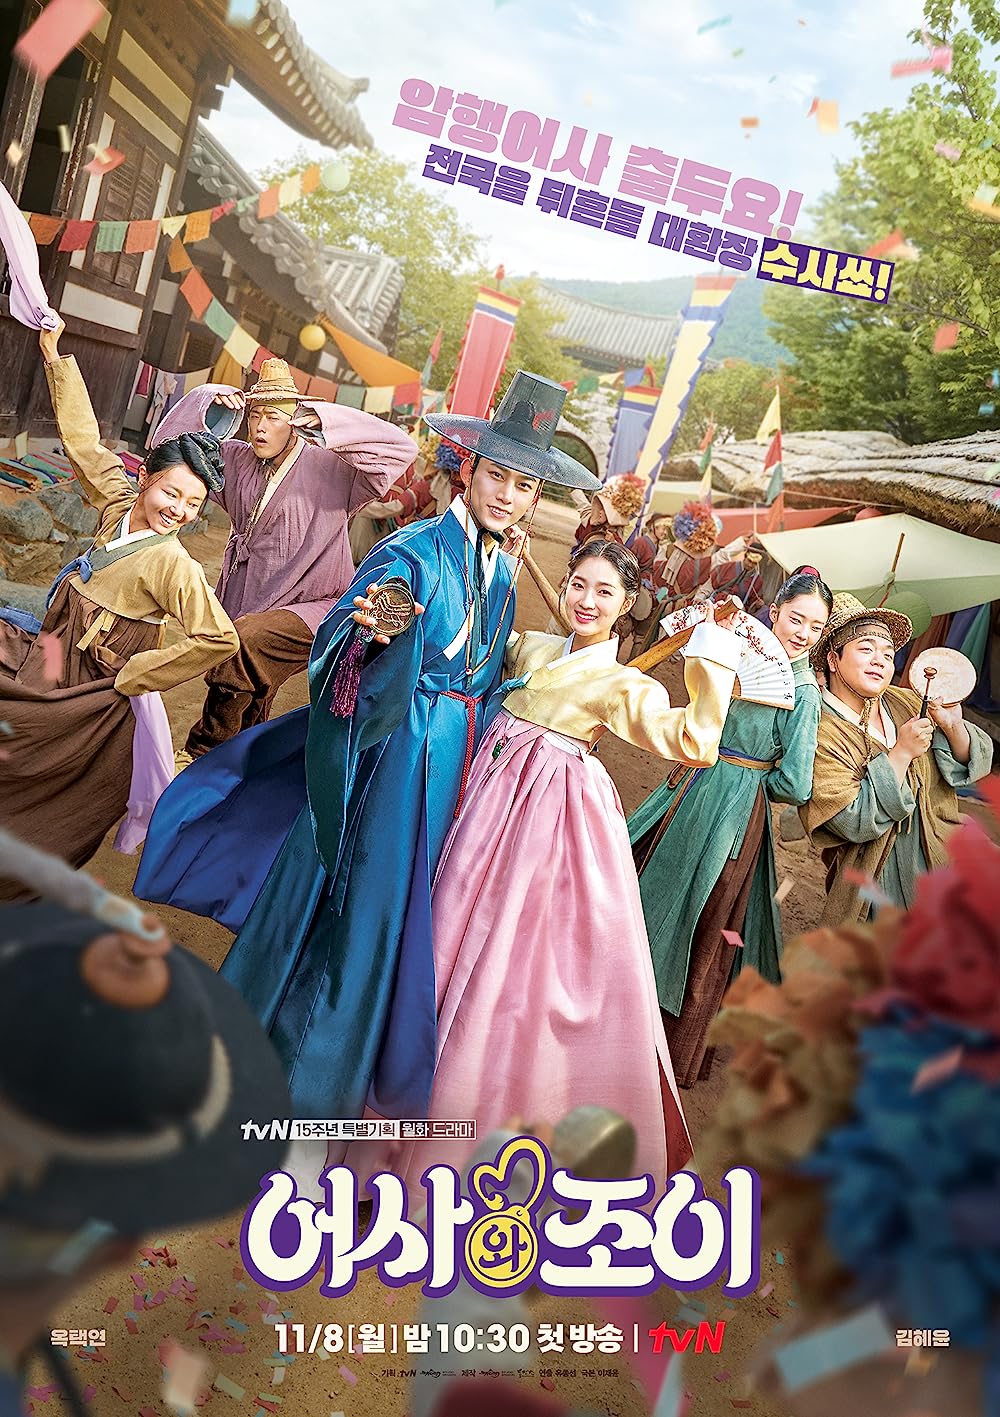 ดูหนังออนไลน์ฟรี ซีรี่ย์เกาหลี Secret Royal Inspector & Joy ซับไทย (จบ)